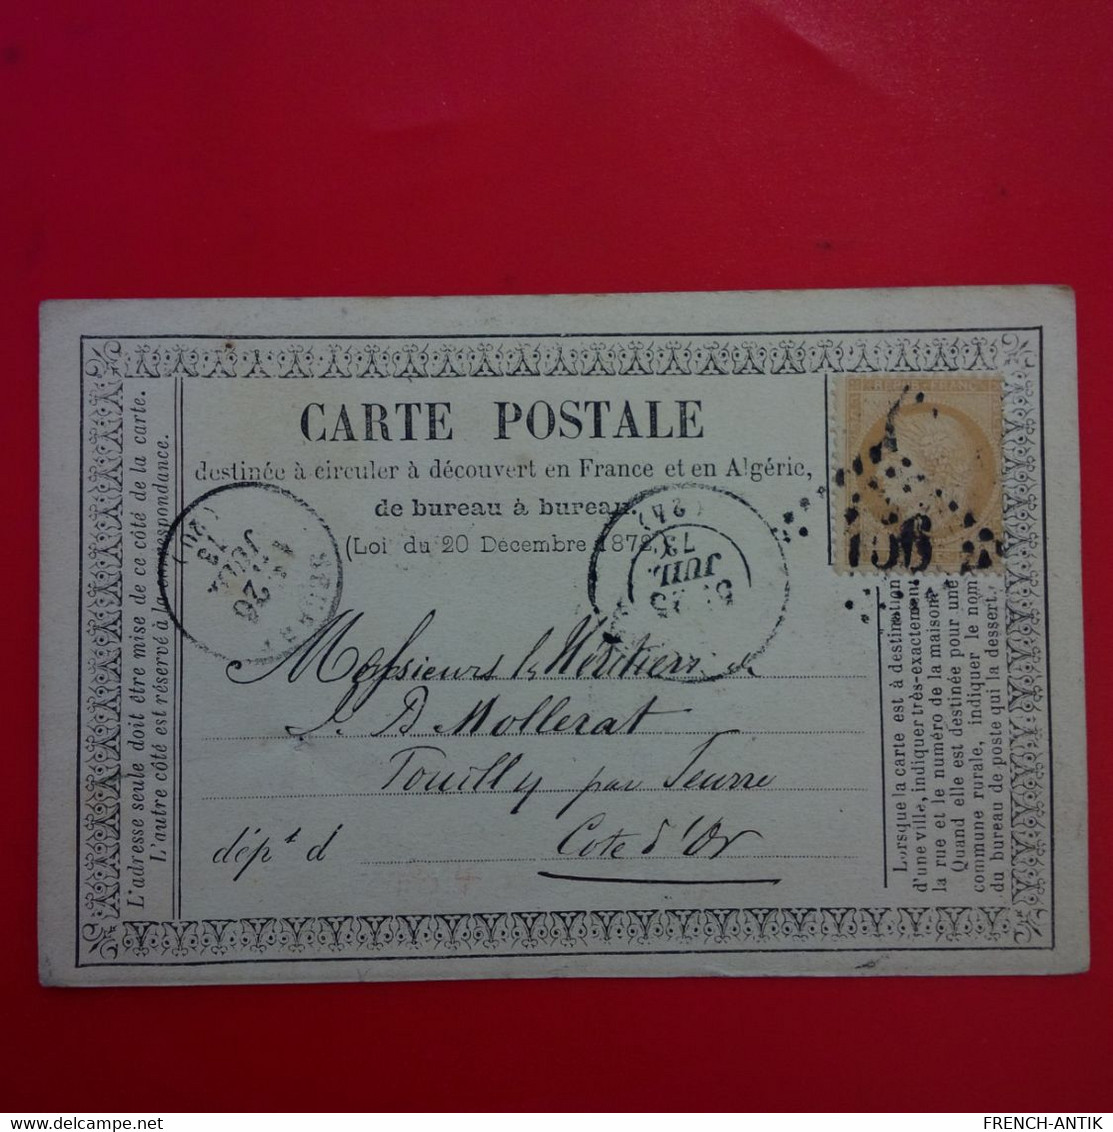 CARTE POSTALE TIMBRE BISTRE 1873 MULHOUSE POUR COTE D OR CACHET GROS CHIFFRE - 1871-1875 Cérès